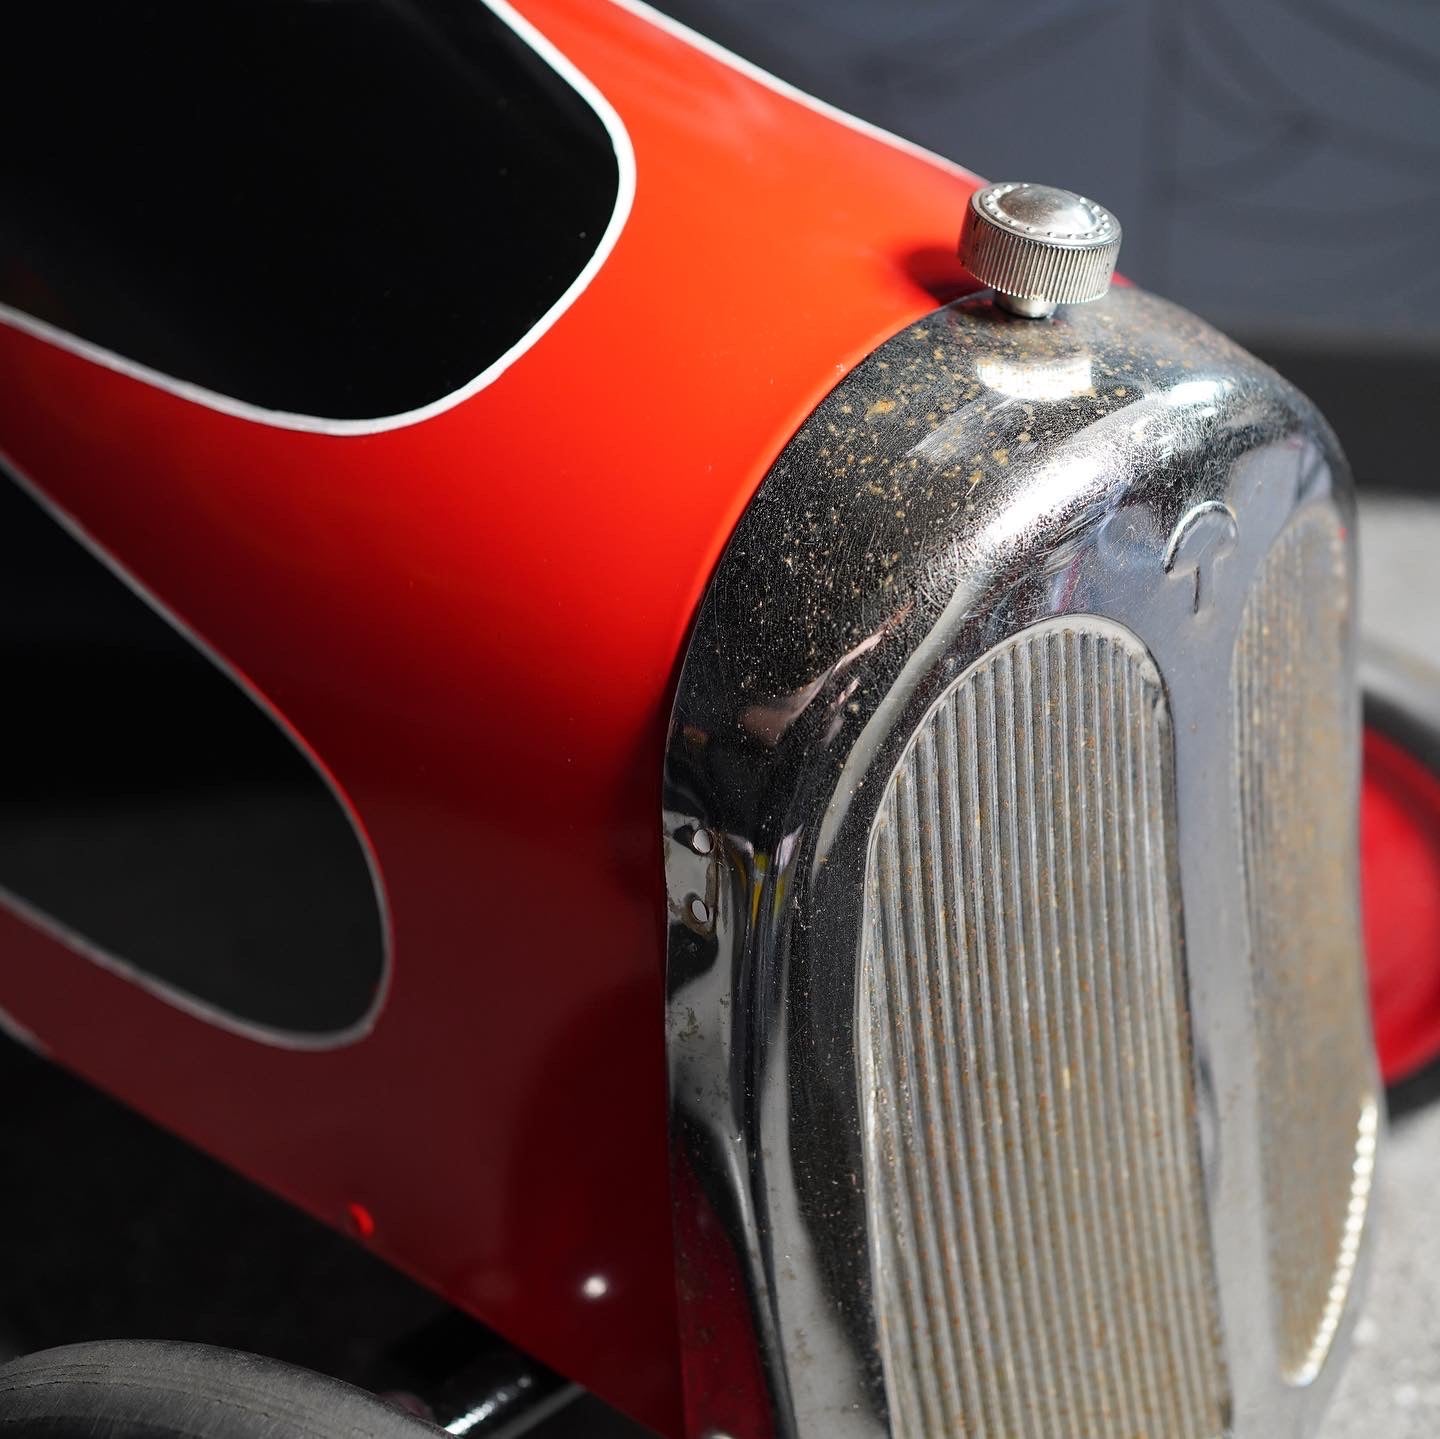 Renegade 'Red Rocket' - Vintage Restored Pedal Car